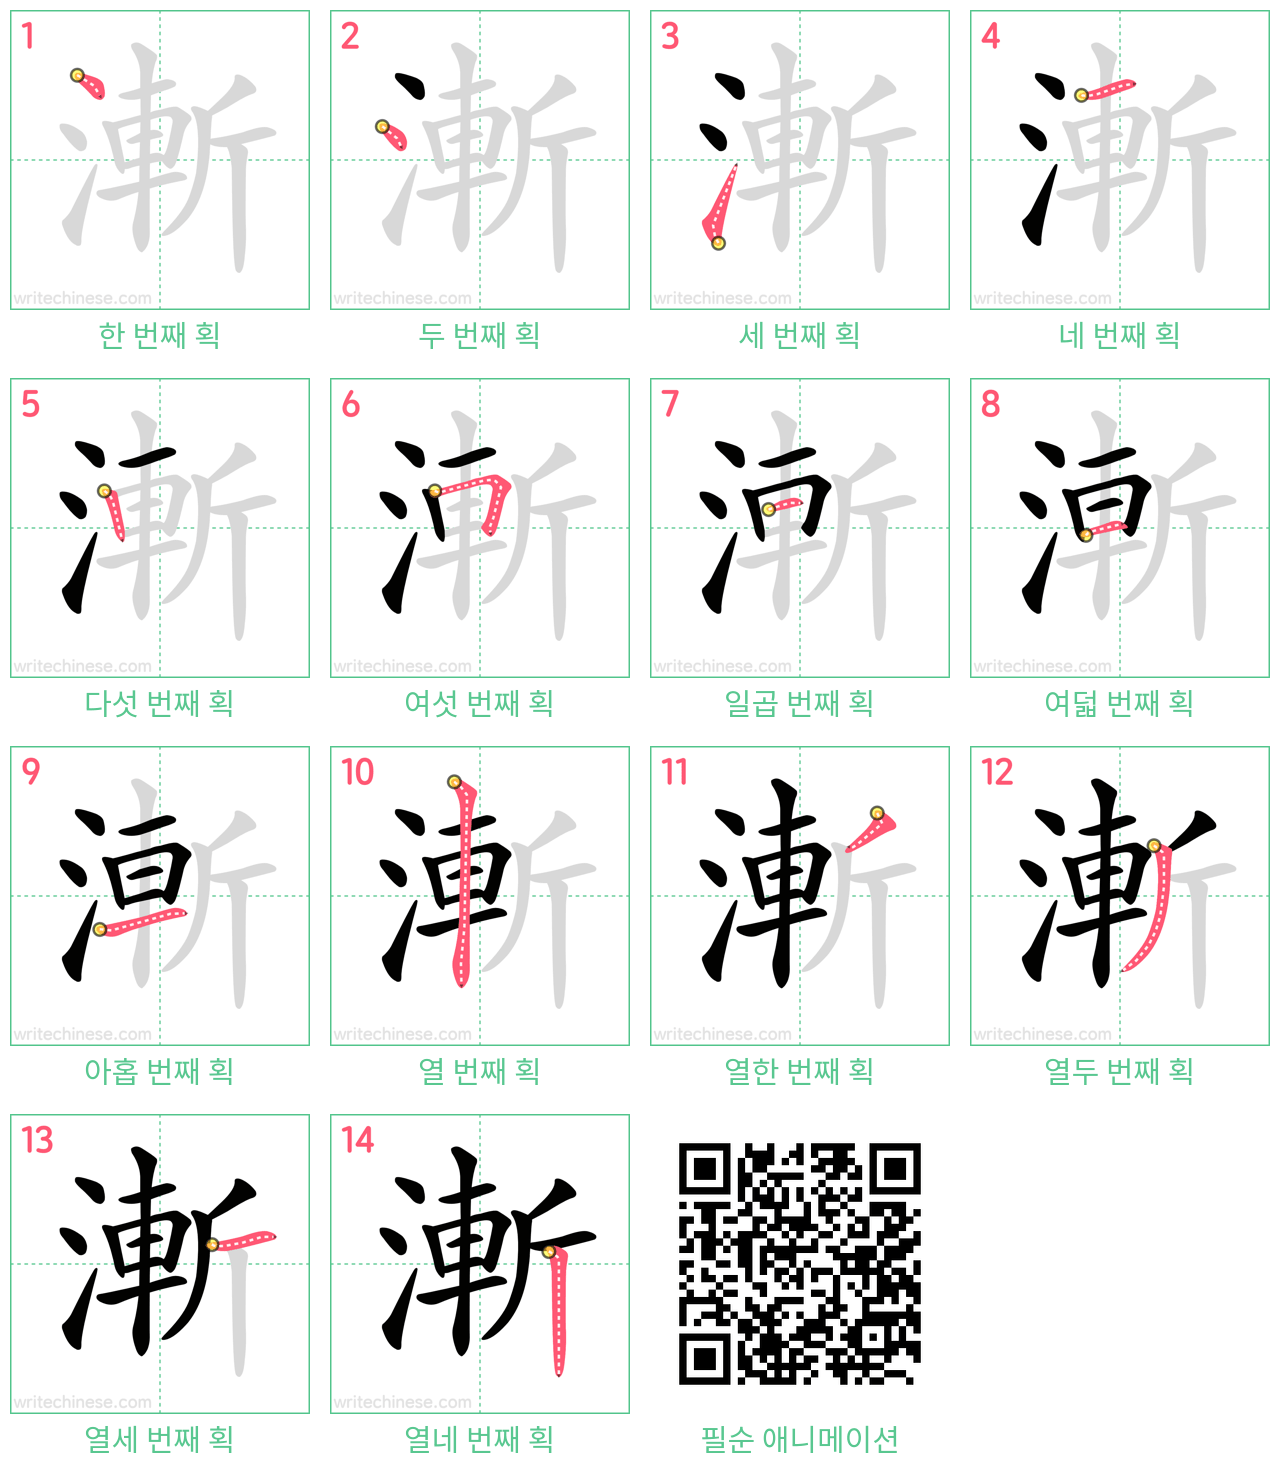 漸 step-by-step stroke order diagrams